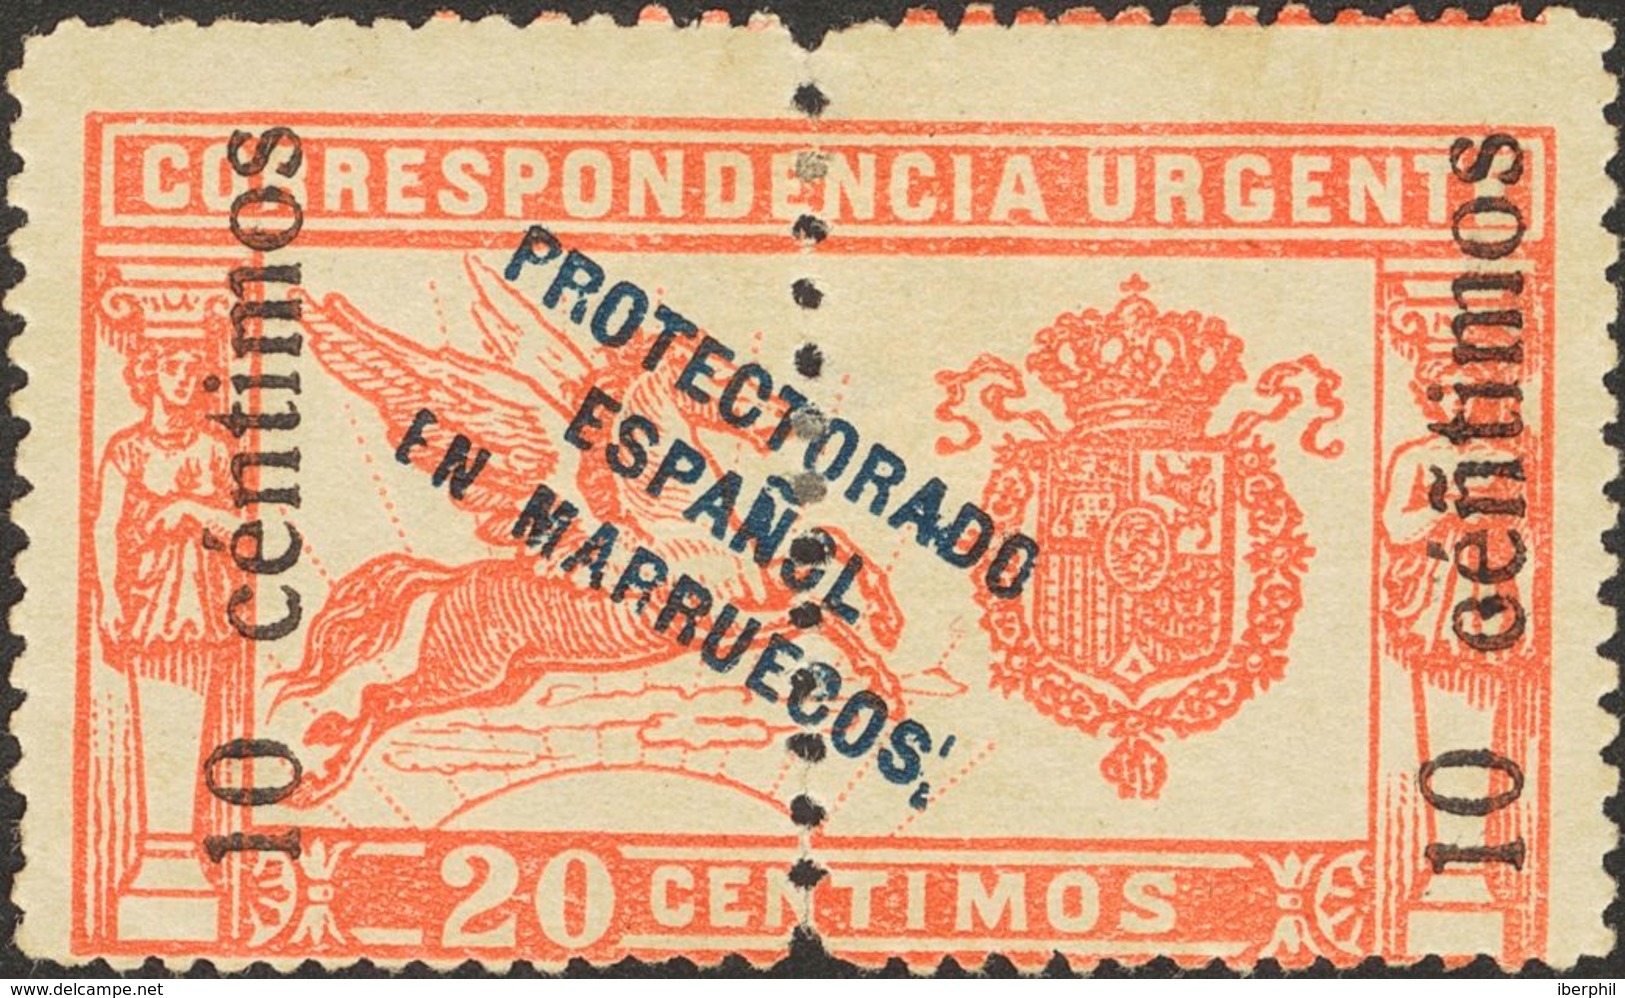 Marruecos. * 66hed 1920. 10 Cts Sobre 20 Cts Rojo. Variedad "Ñ" EN LUGAR DE "N" EN CENTIMOS. MAGNIFICO. 2013 255. - Spanisch-Marokko